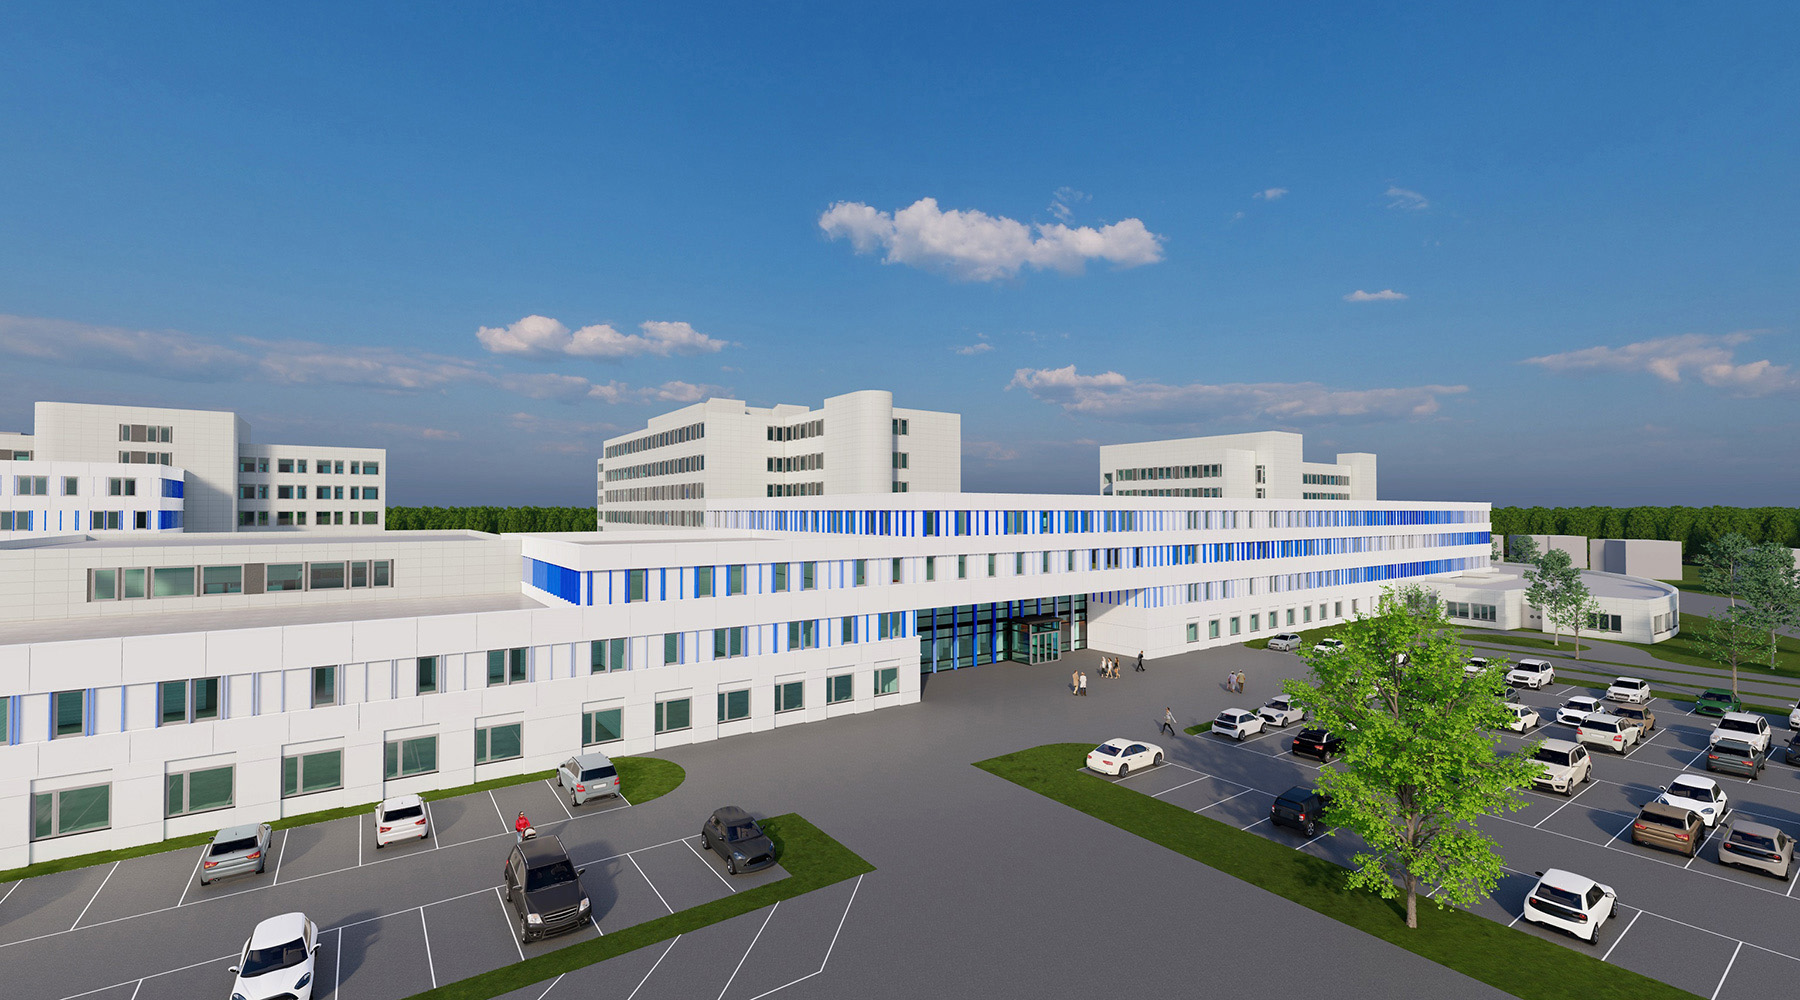 Machbarkeitsstudie/Zielplanung für die Sana Kliniken in Duisburg. 3D-Modell. Sehr breites Gebäude mit weißer Fassade, Eingangsbereich mit Fensterfront.